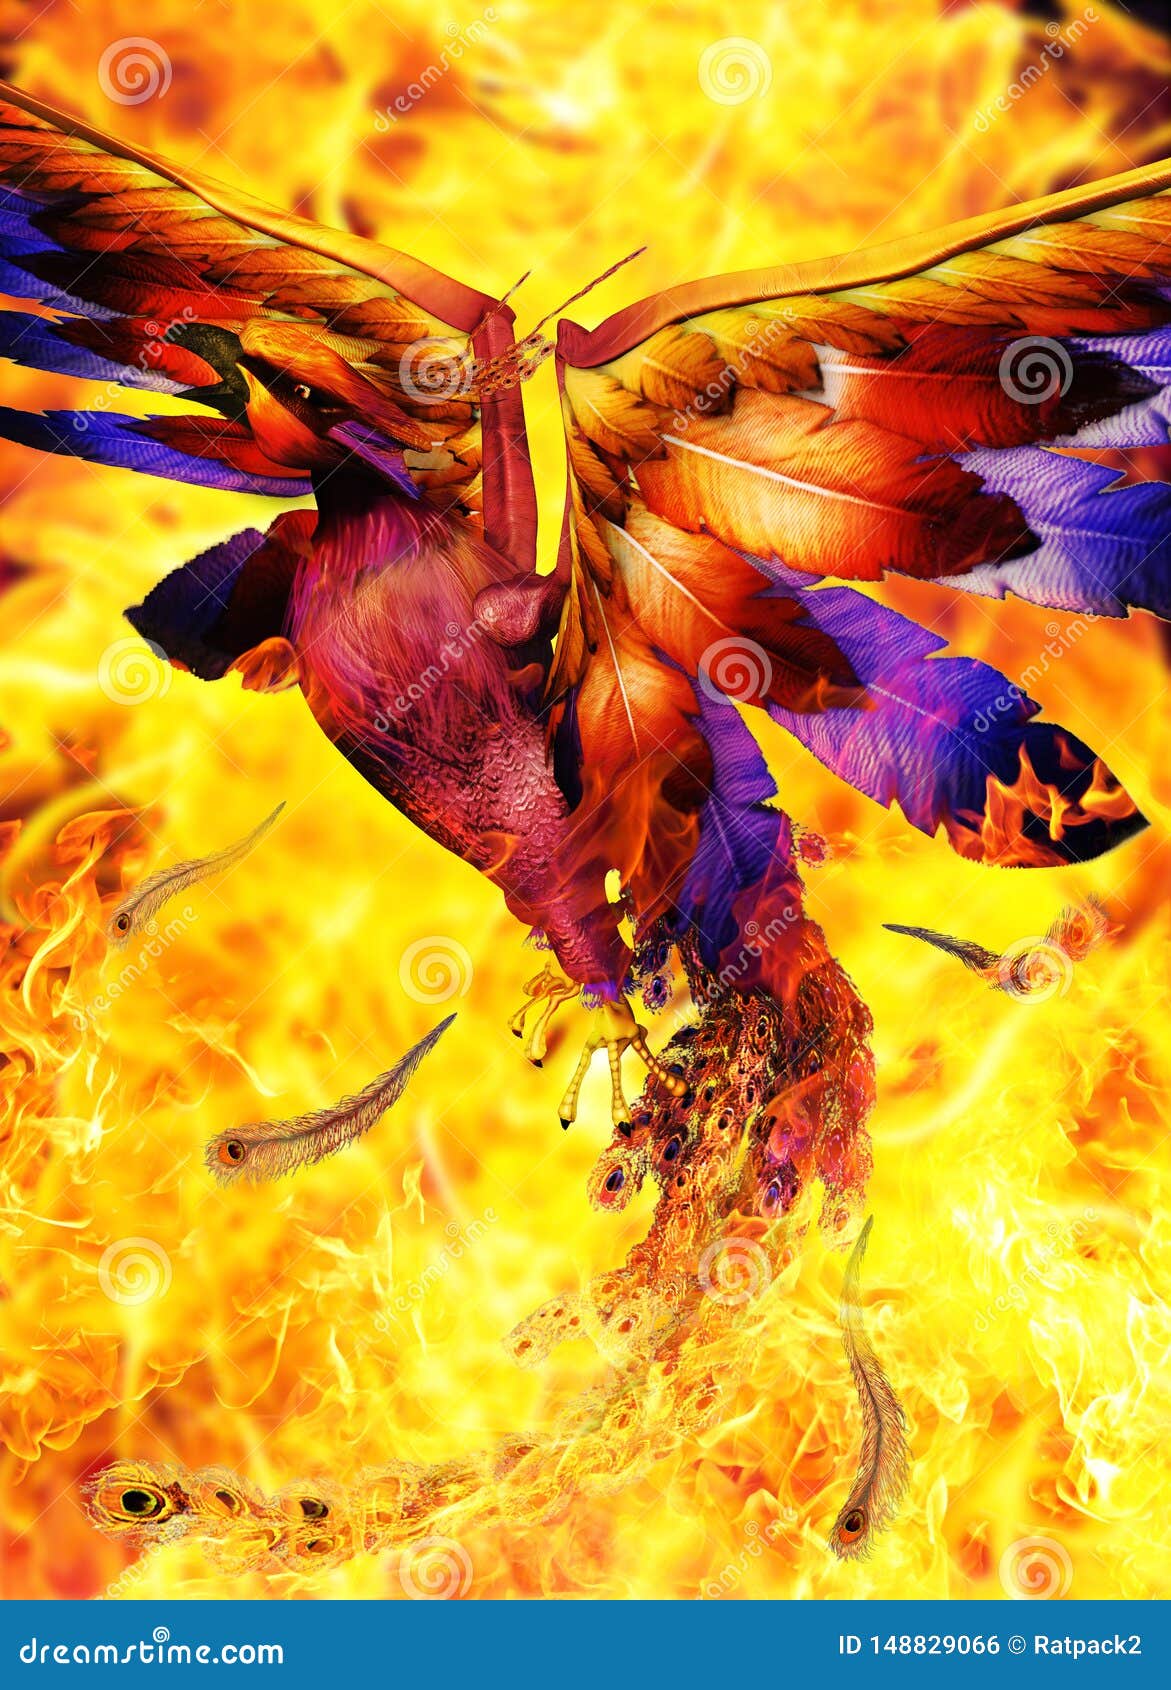 Pictures phoenix rising 